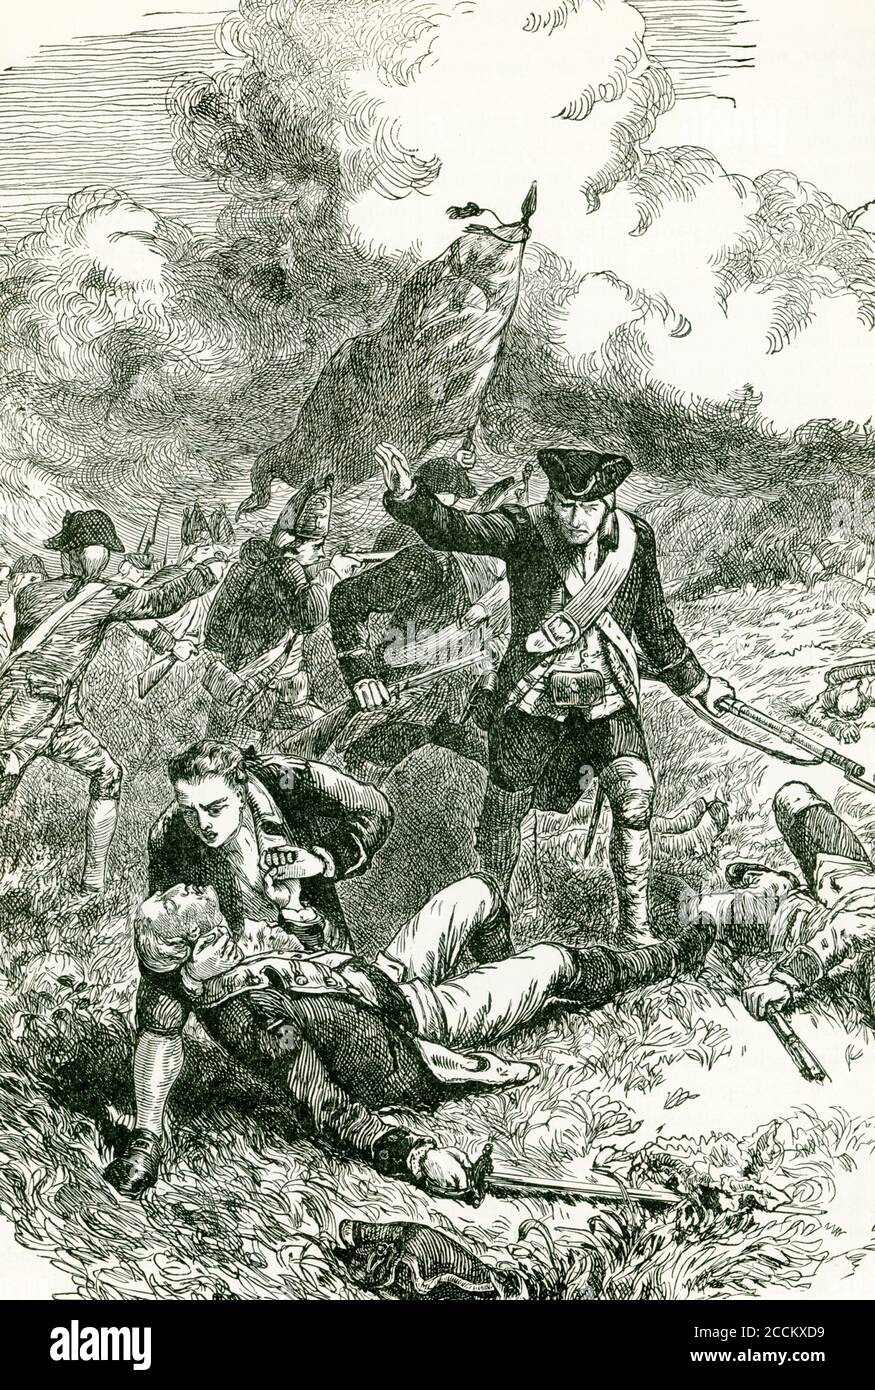 Le major britannique Pitcairn, avec le lieutenant-colonel Smith, a défilé 800 réguliers à Lexington, puis à Concord. Pitcairn a été tué en action pendant la bataille de Bunker Hill. Considéré comme l'un des officiers britanniques les plus respectés par ses hommes et les colons, il a été enterré à l'ancienne église du Nord à Boston. Banque D'Images